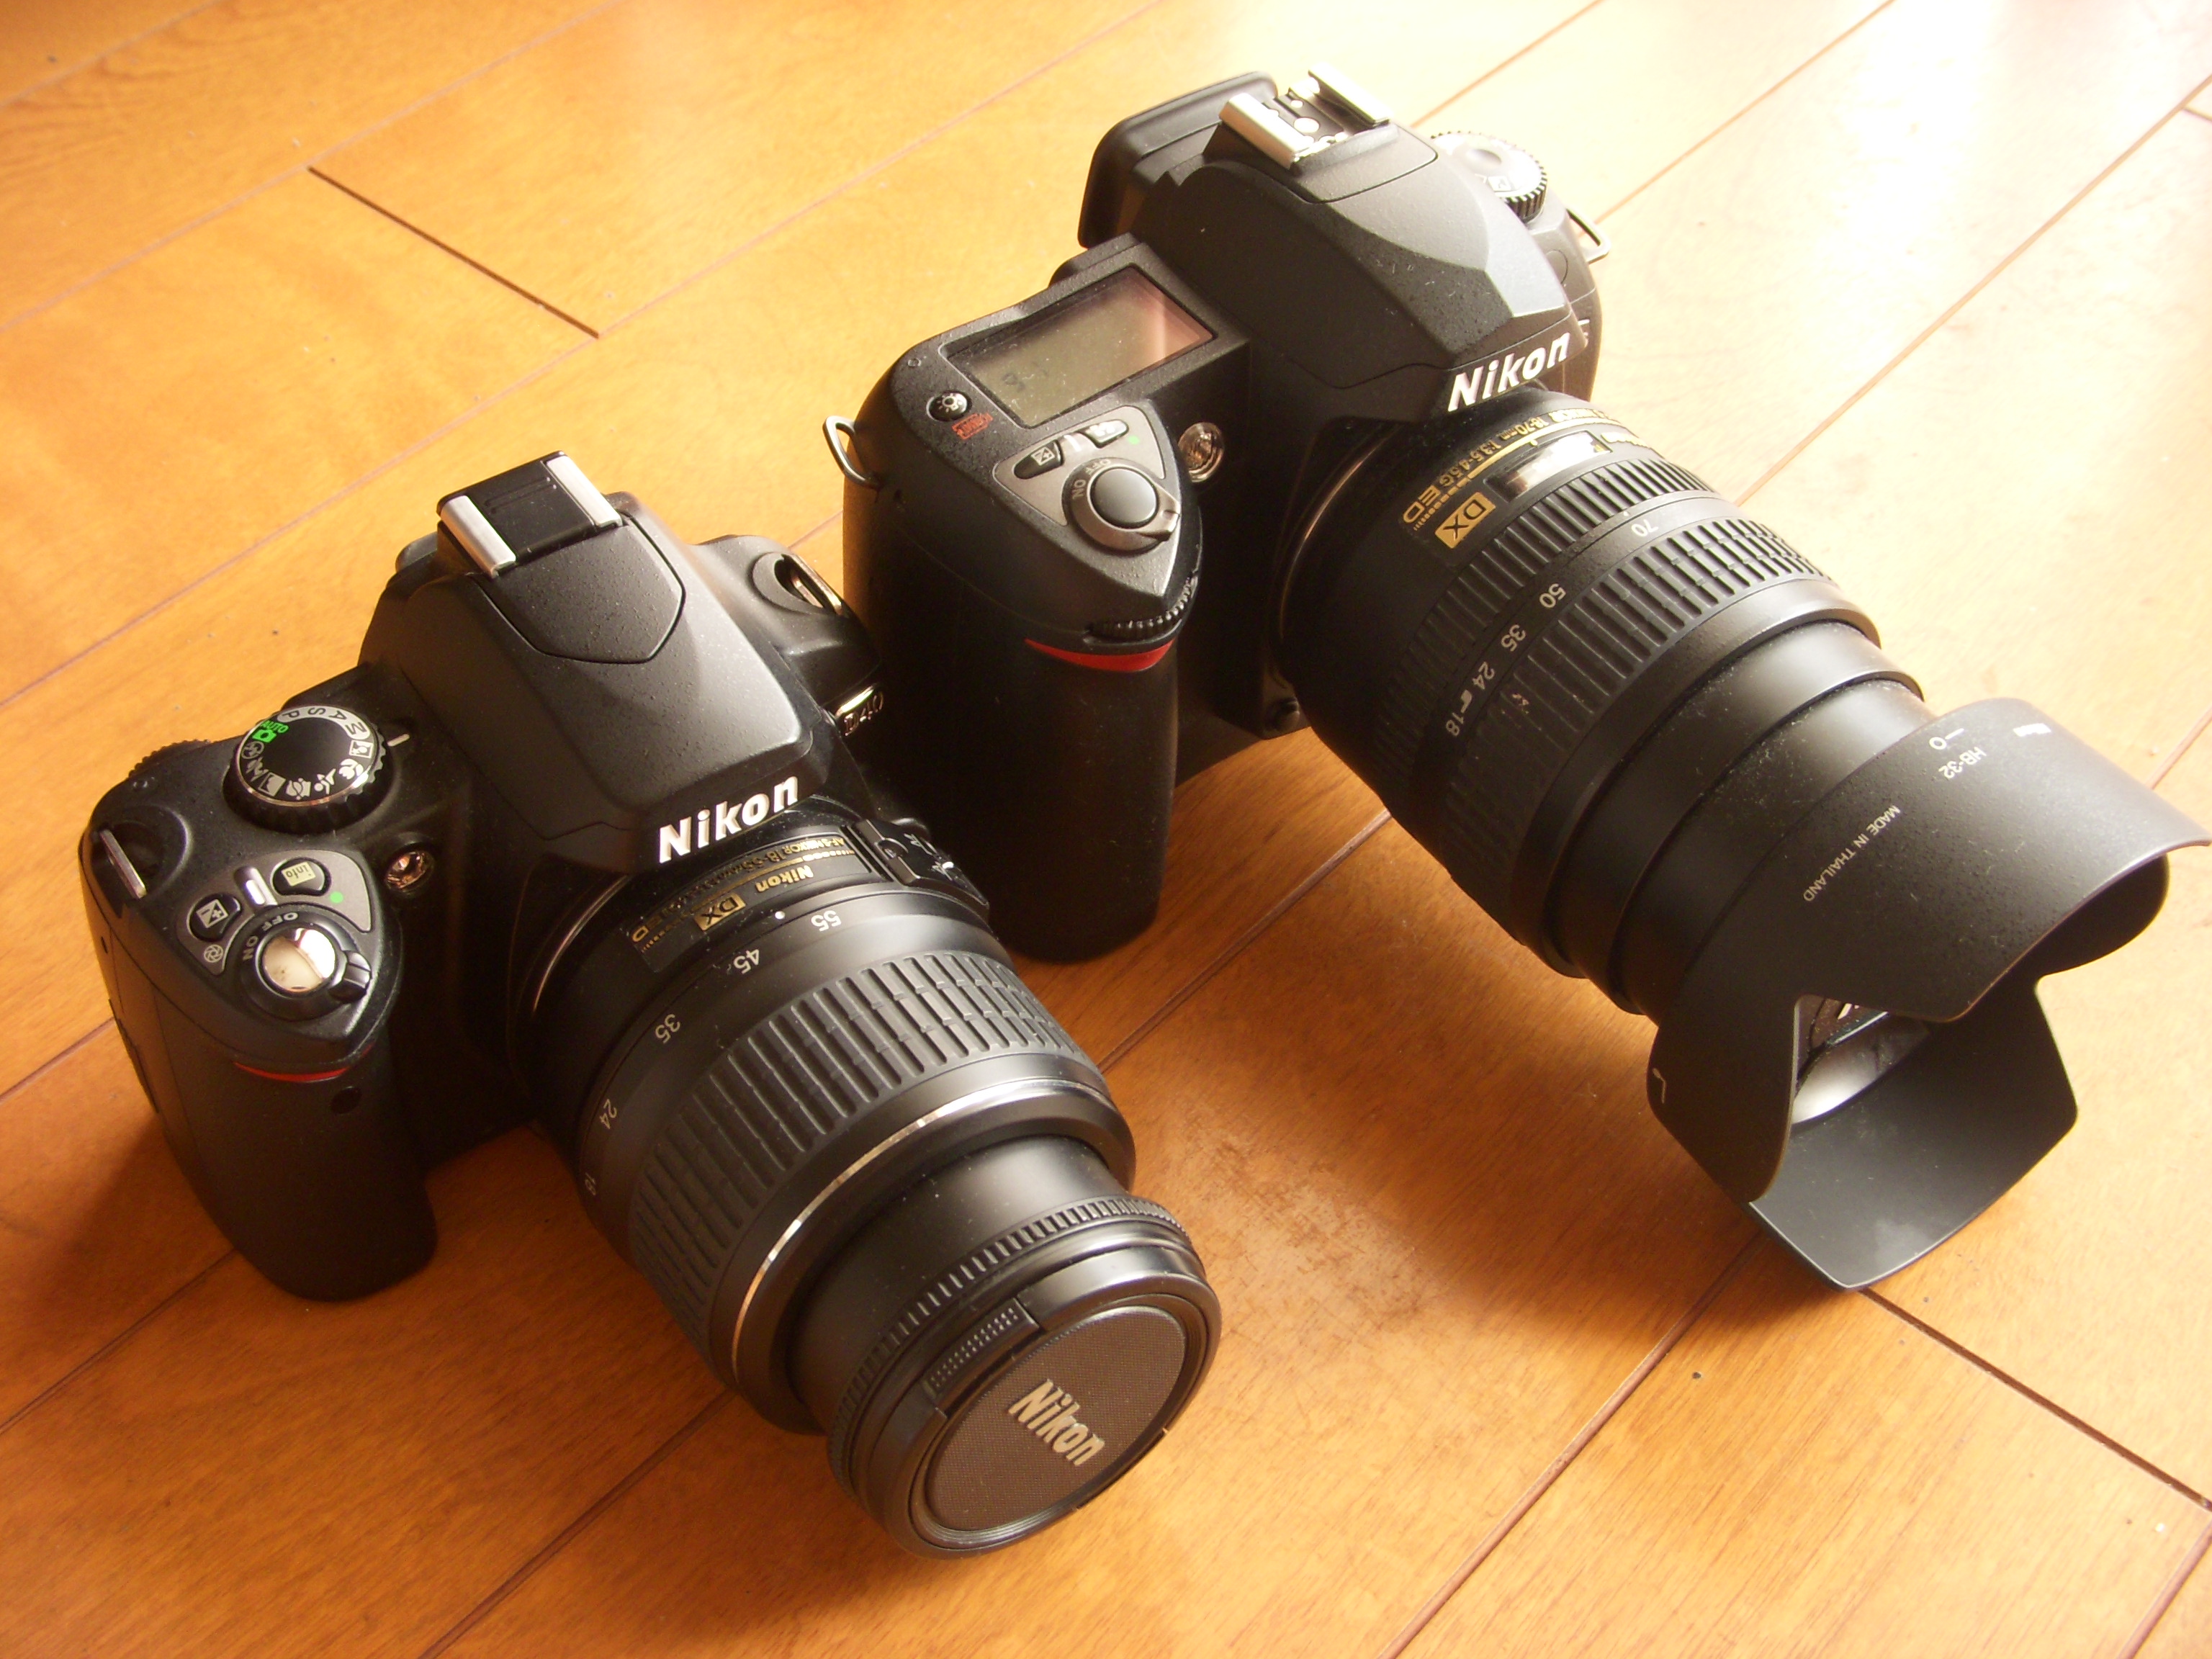 美人手帳 : 【Nikon D40】 小さい、軽い、使いやすい。新デジタル一眼レフカメラ